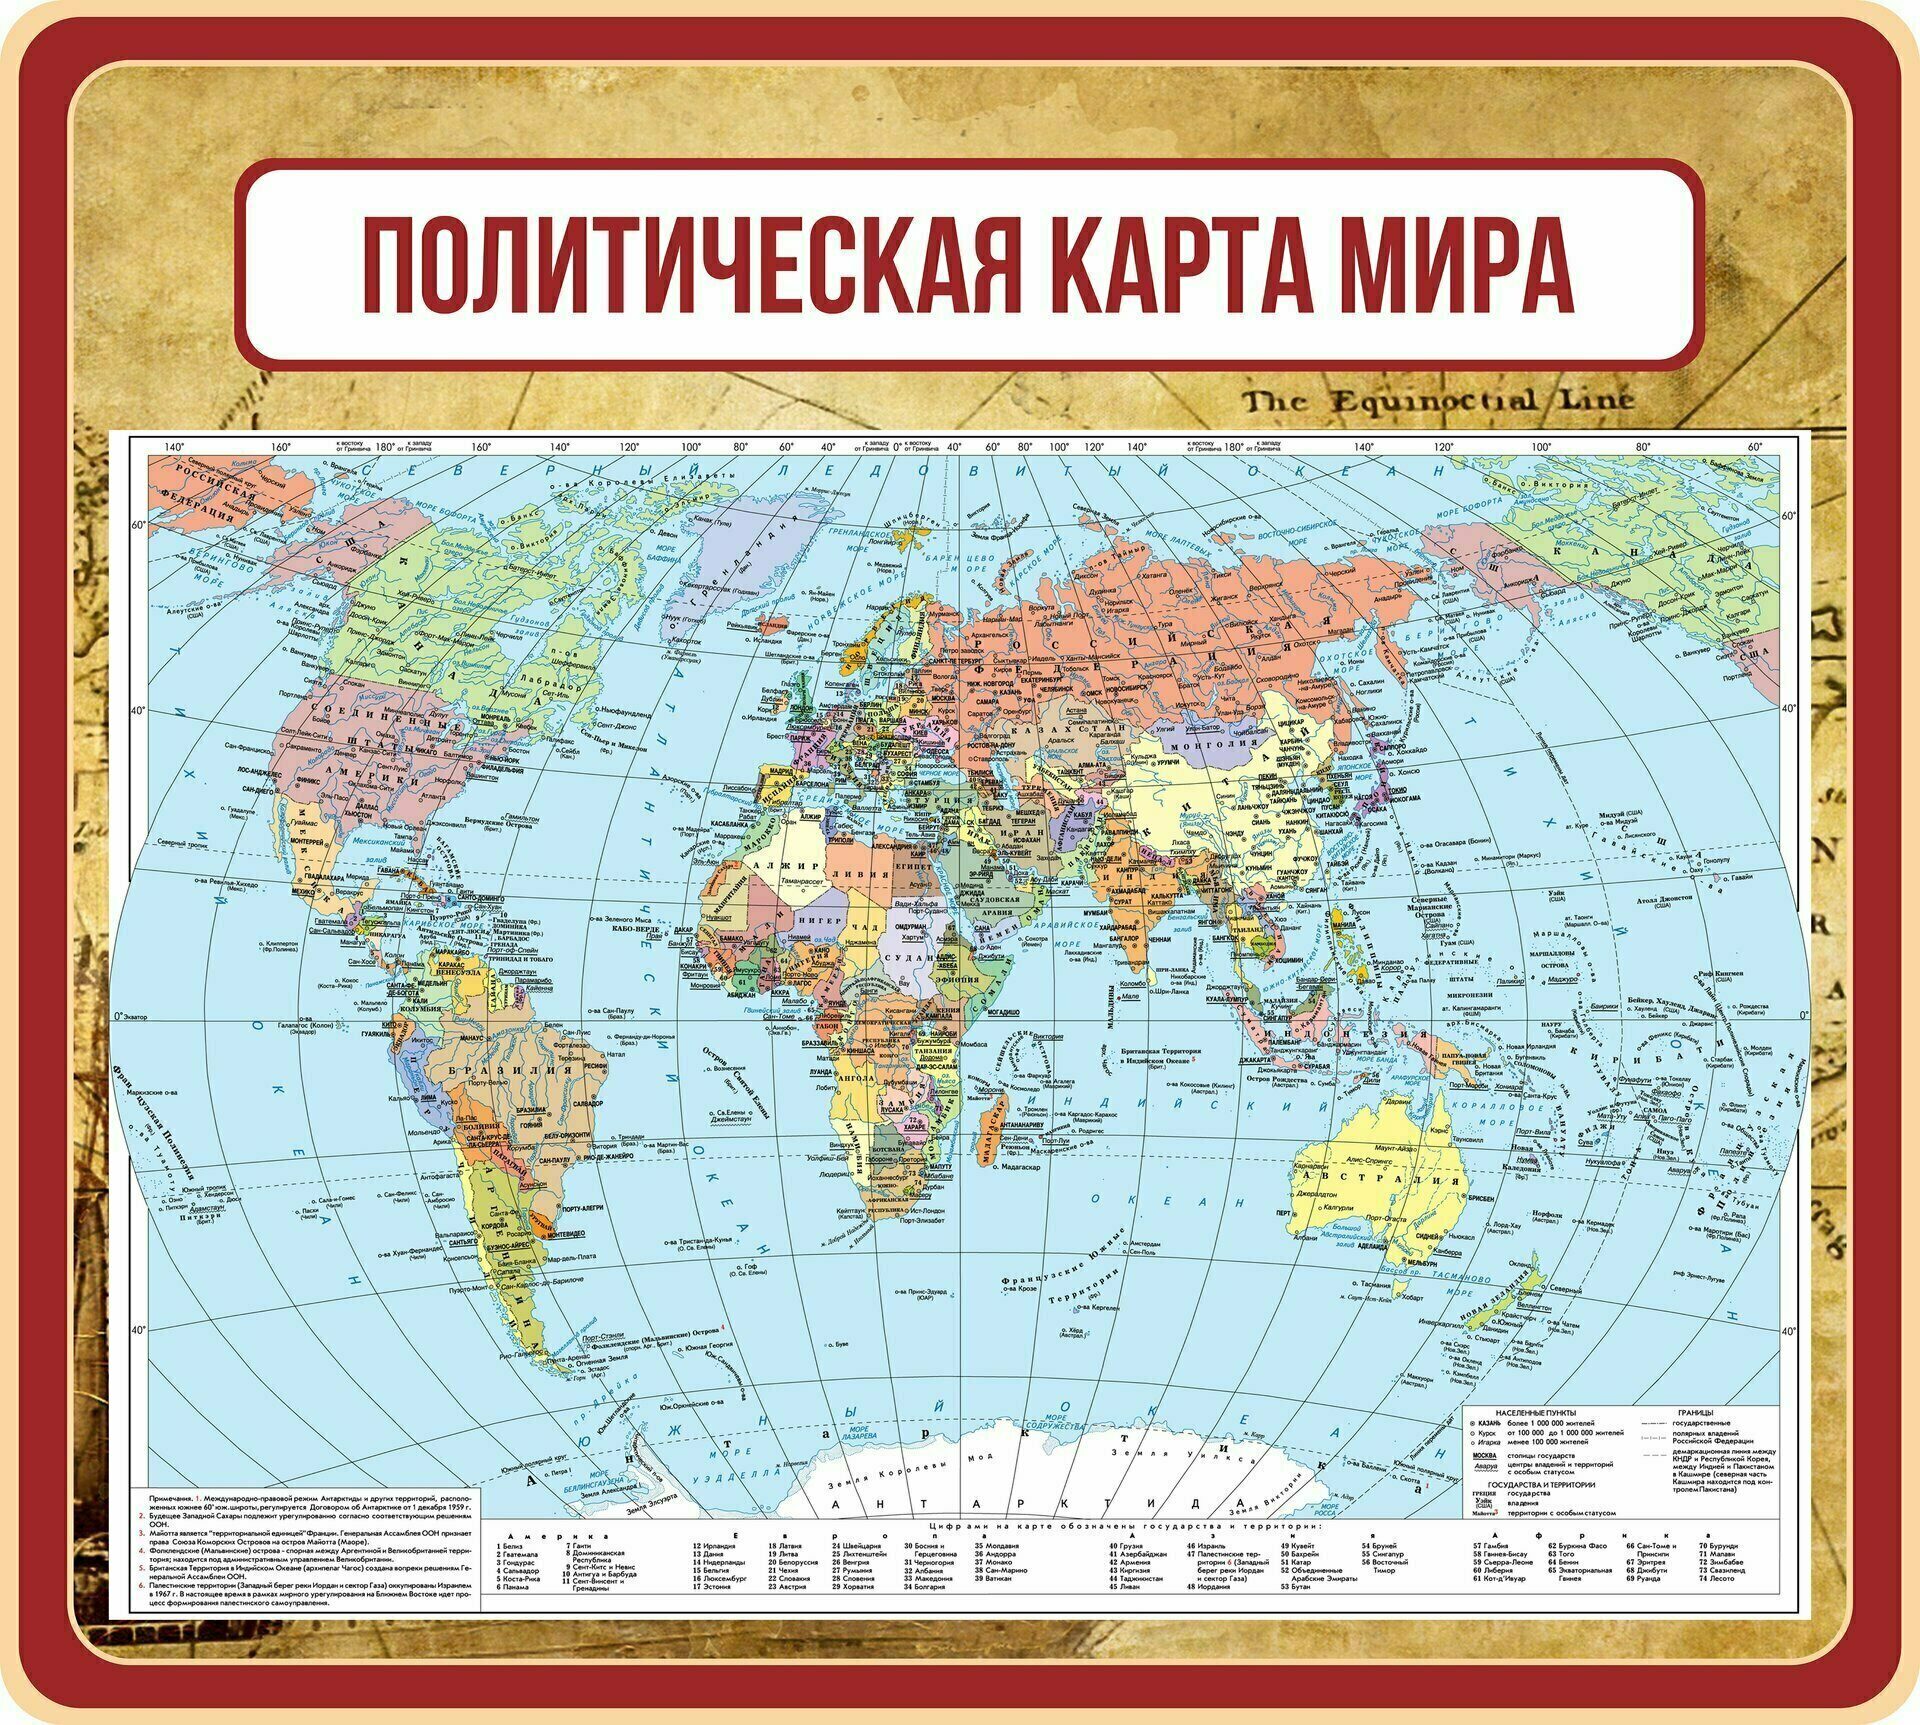 Карта где говорят на русском